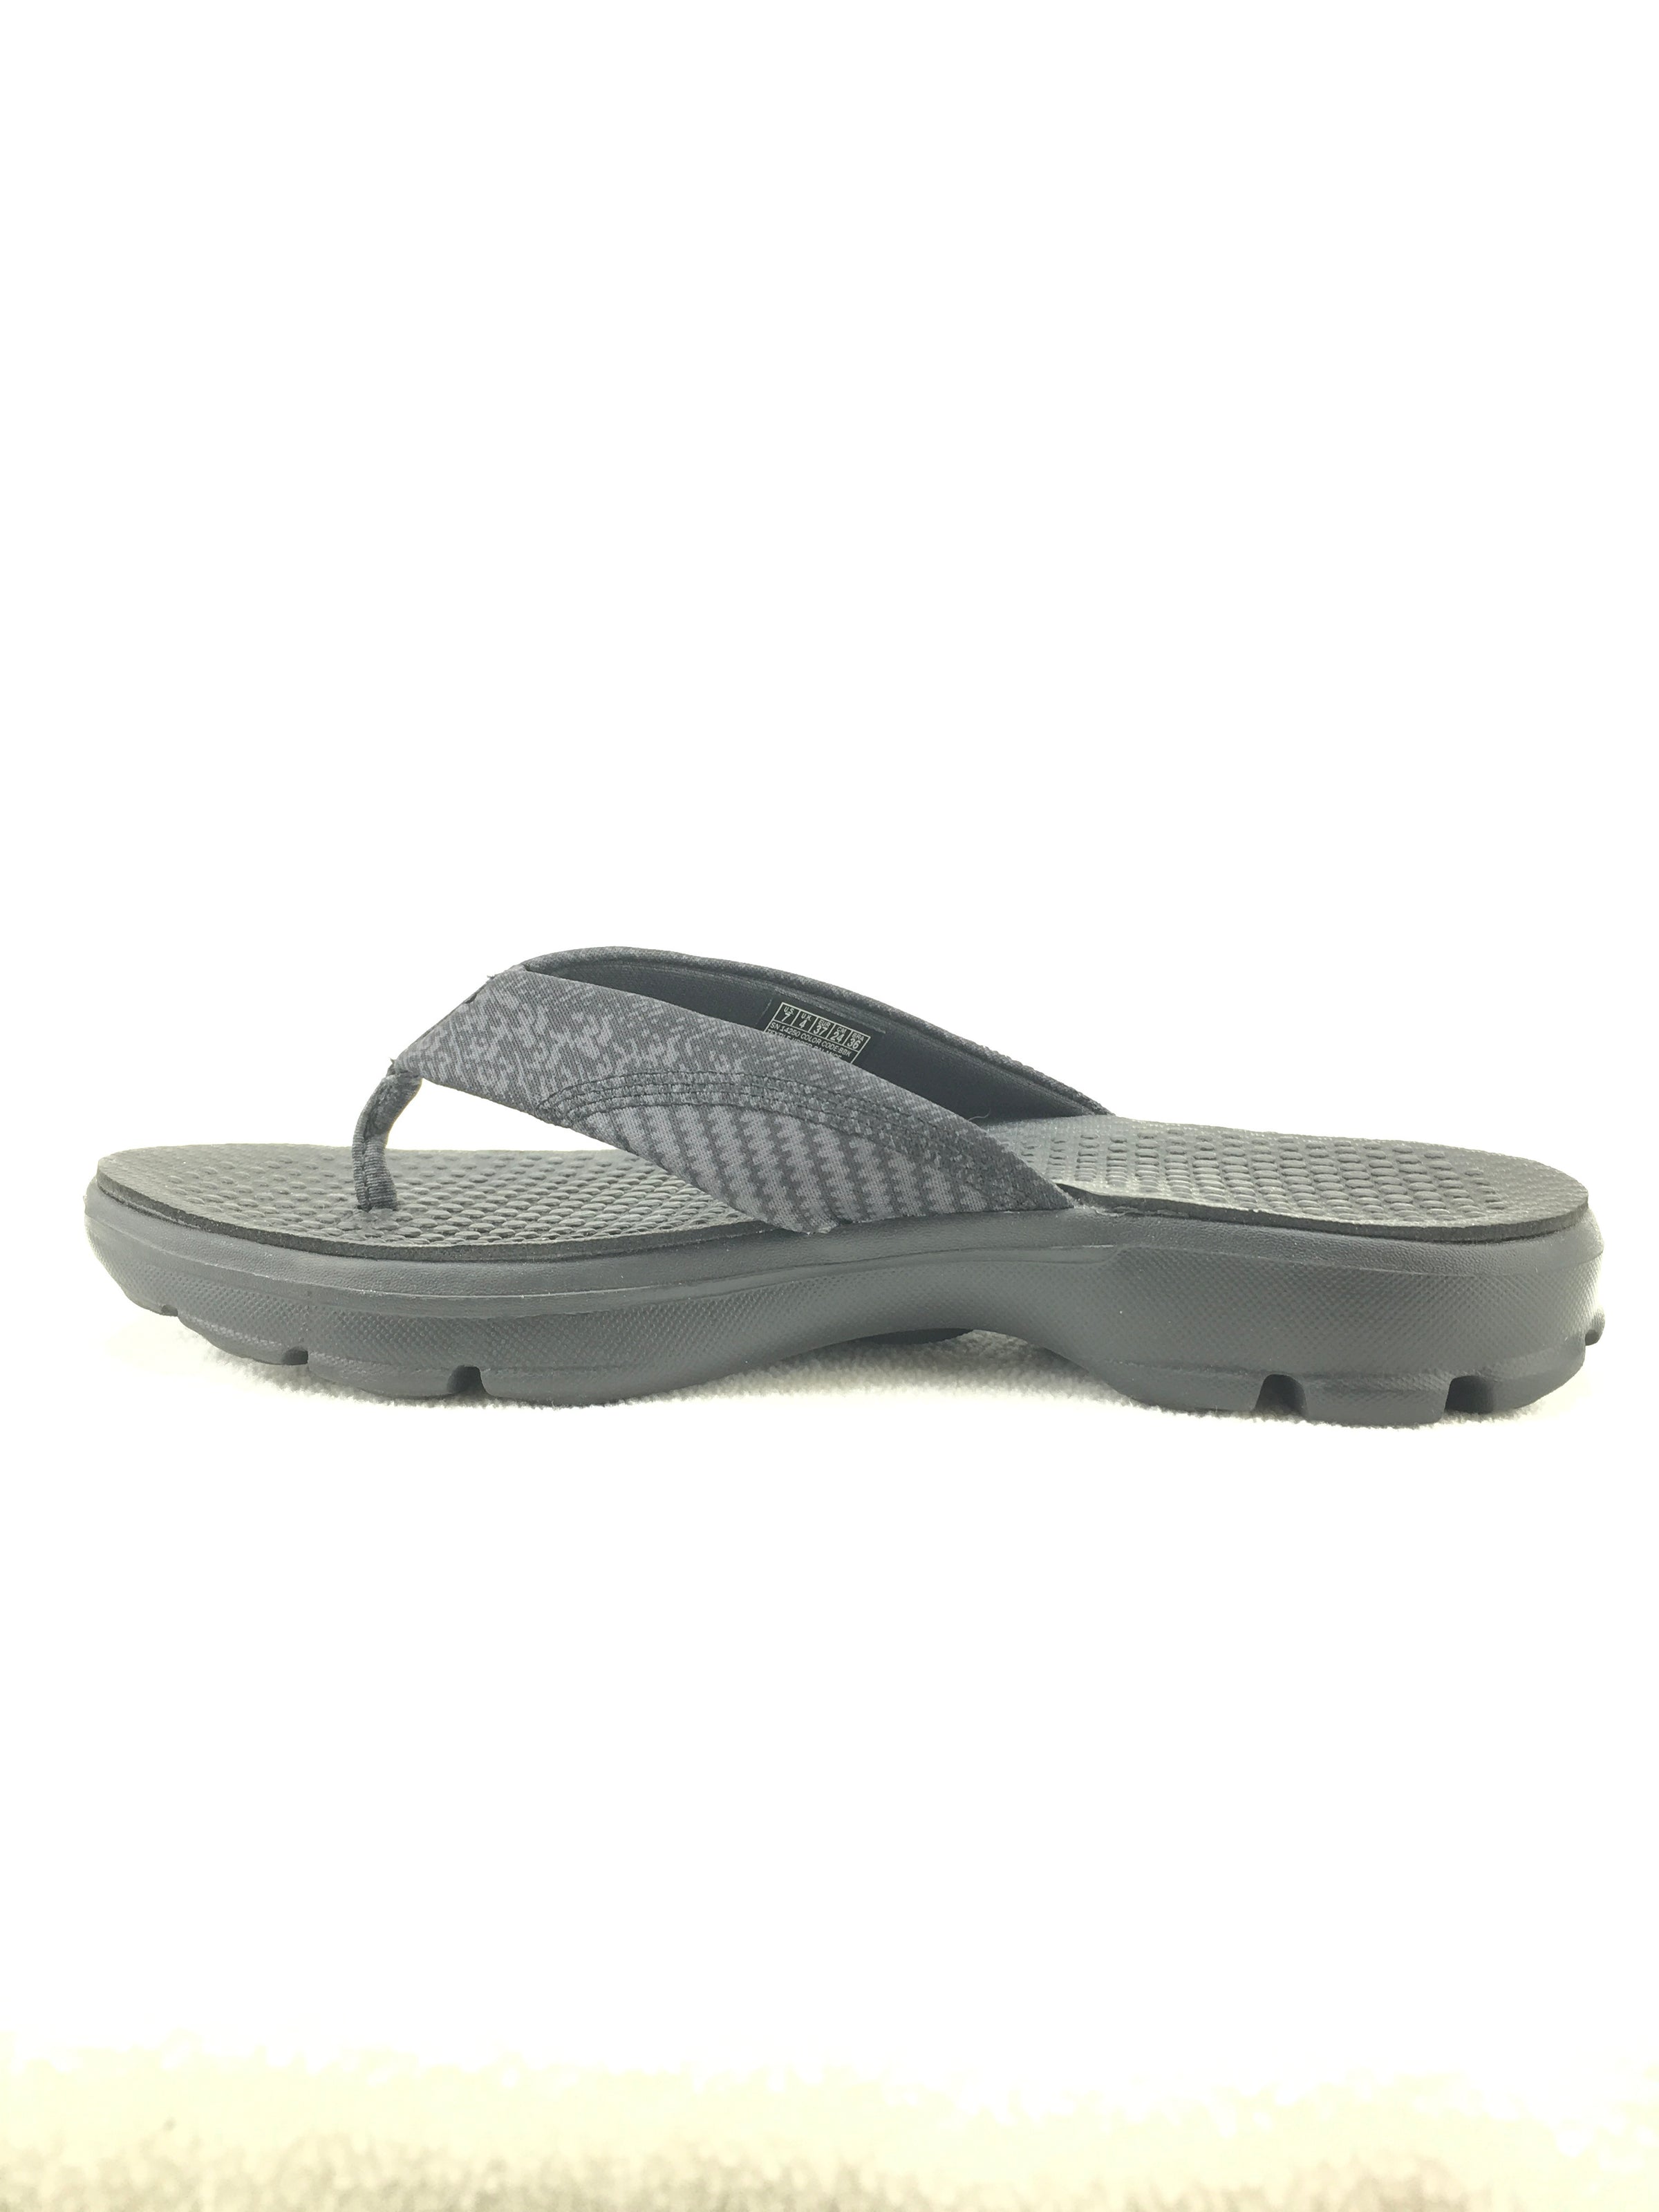 Skechers Goga-Mat Go Walk Sandal Size 7